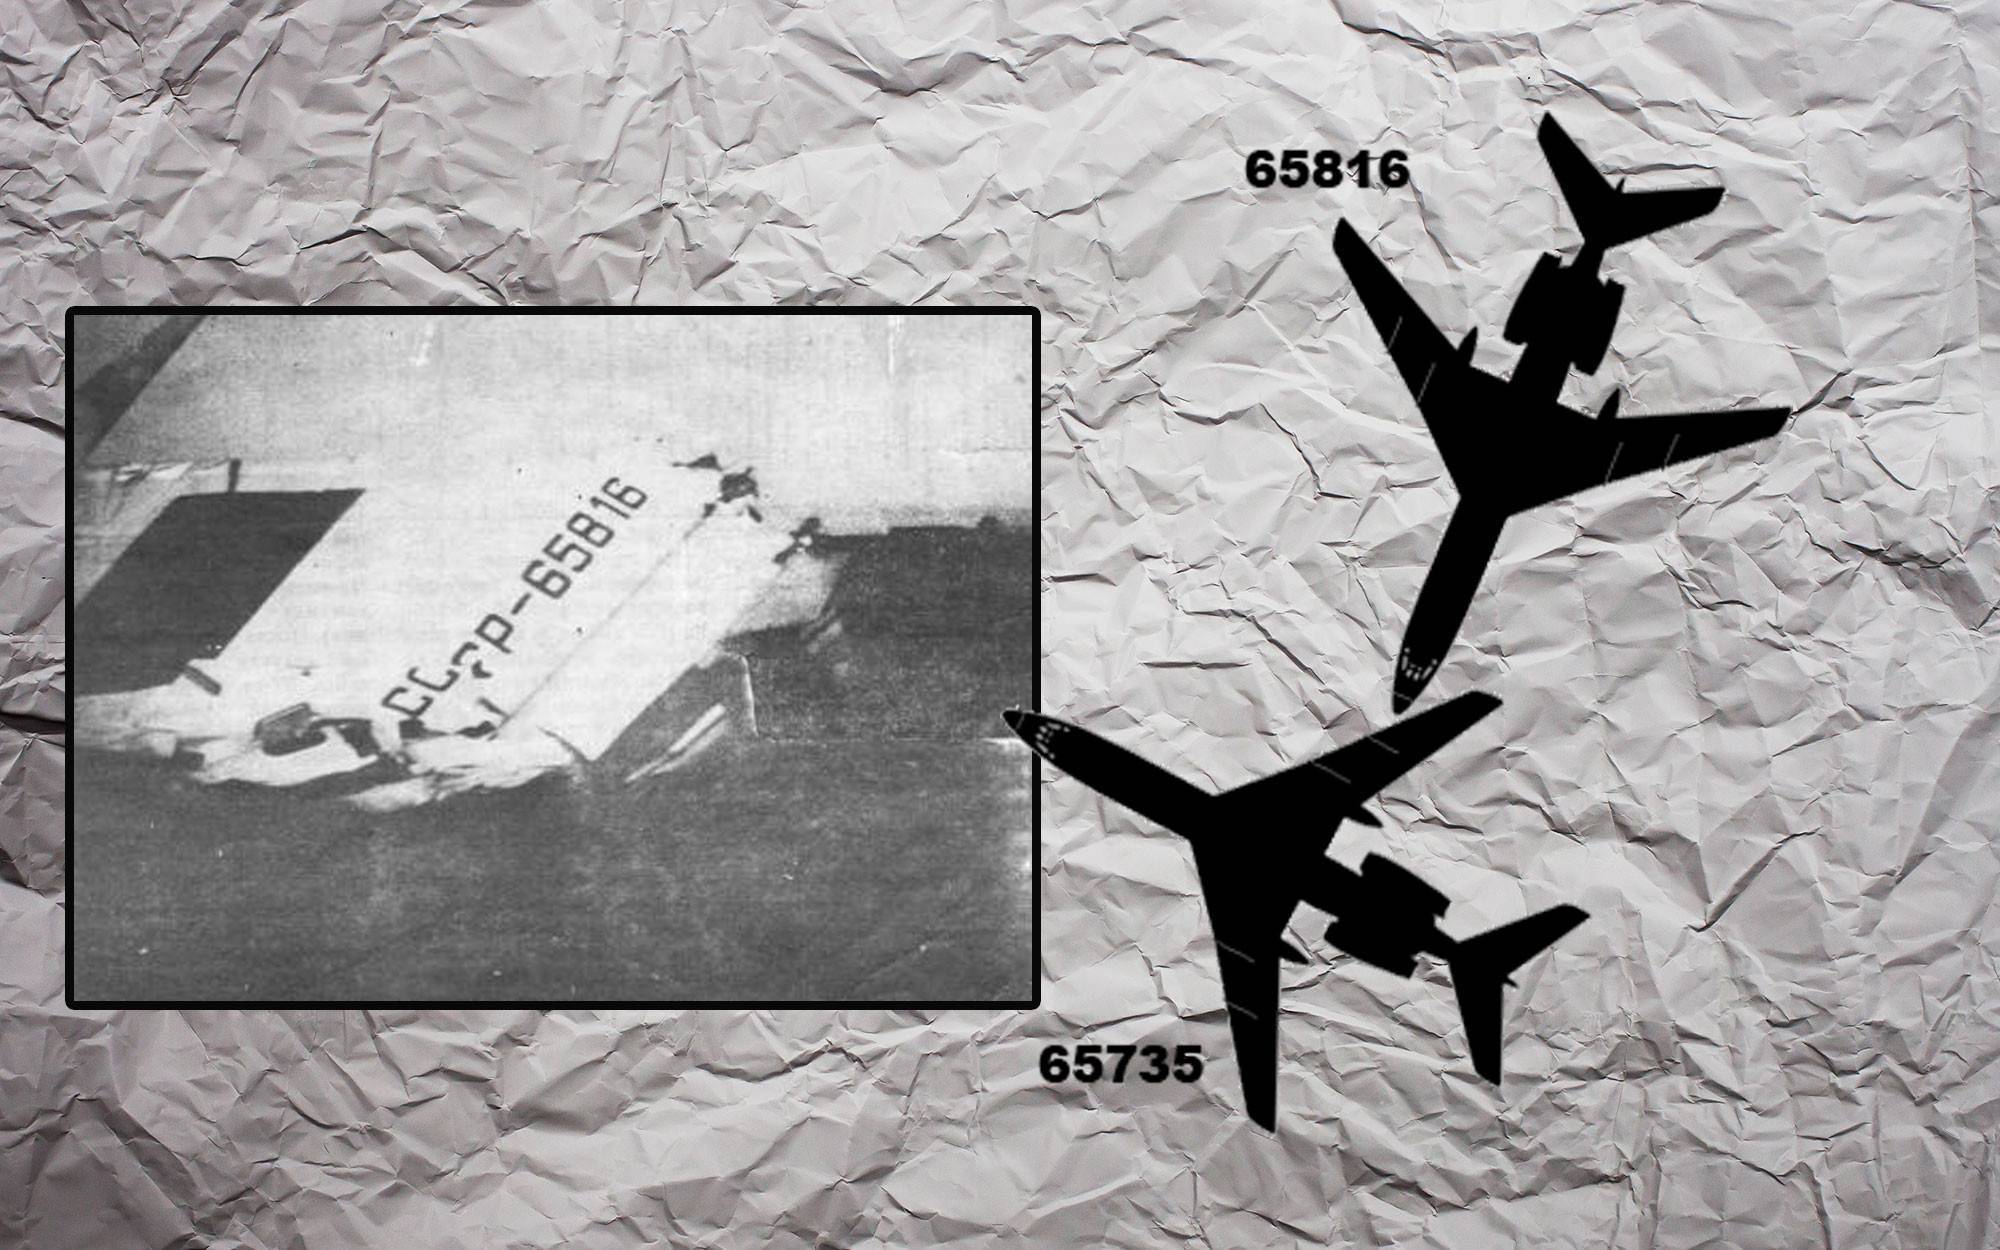 Столкновение ту-134а и ан-26 над львовом. 100 великих авиакатастроф